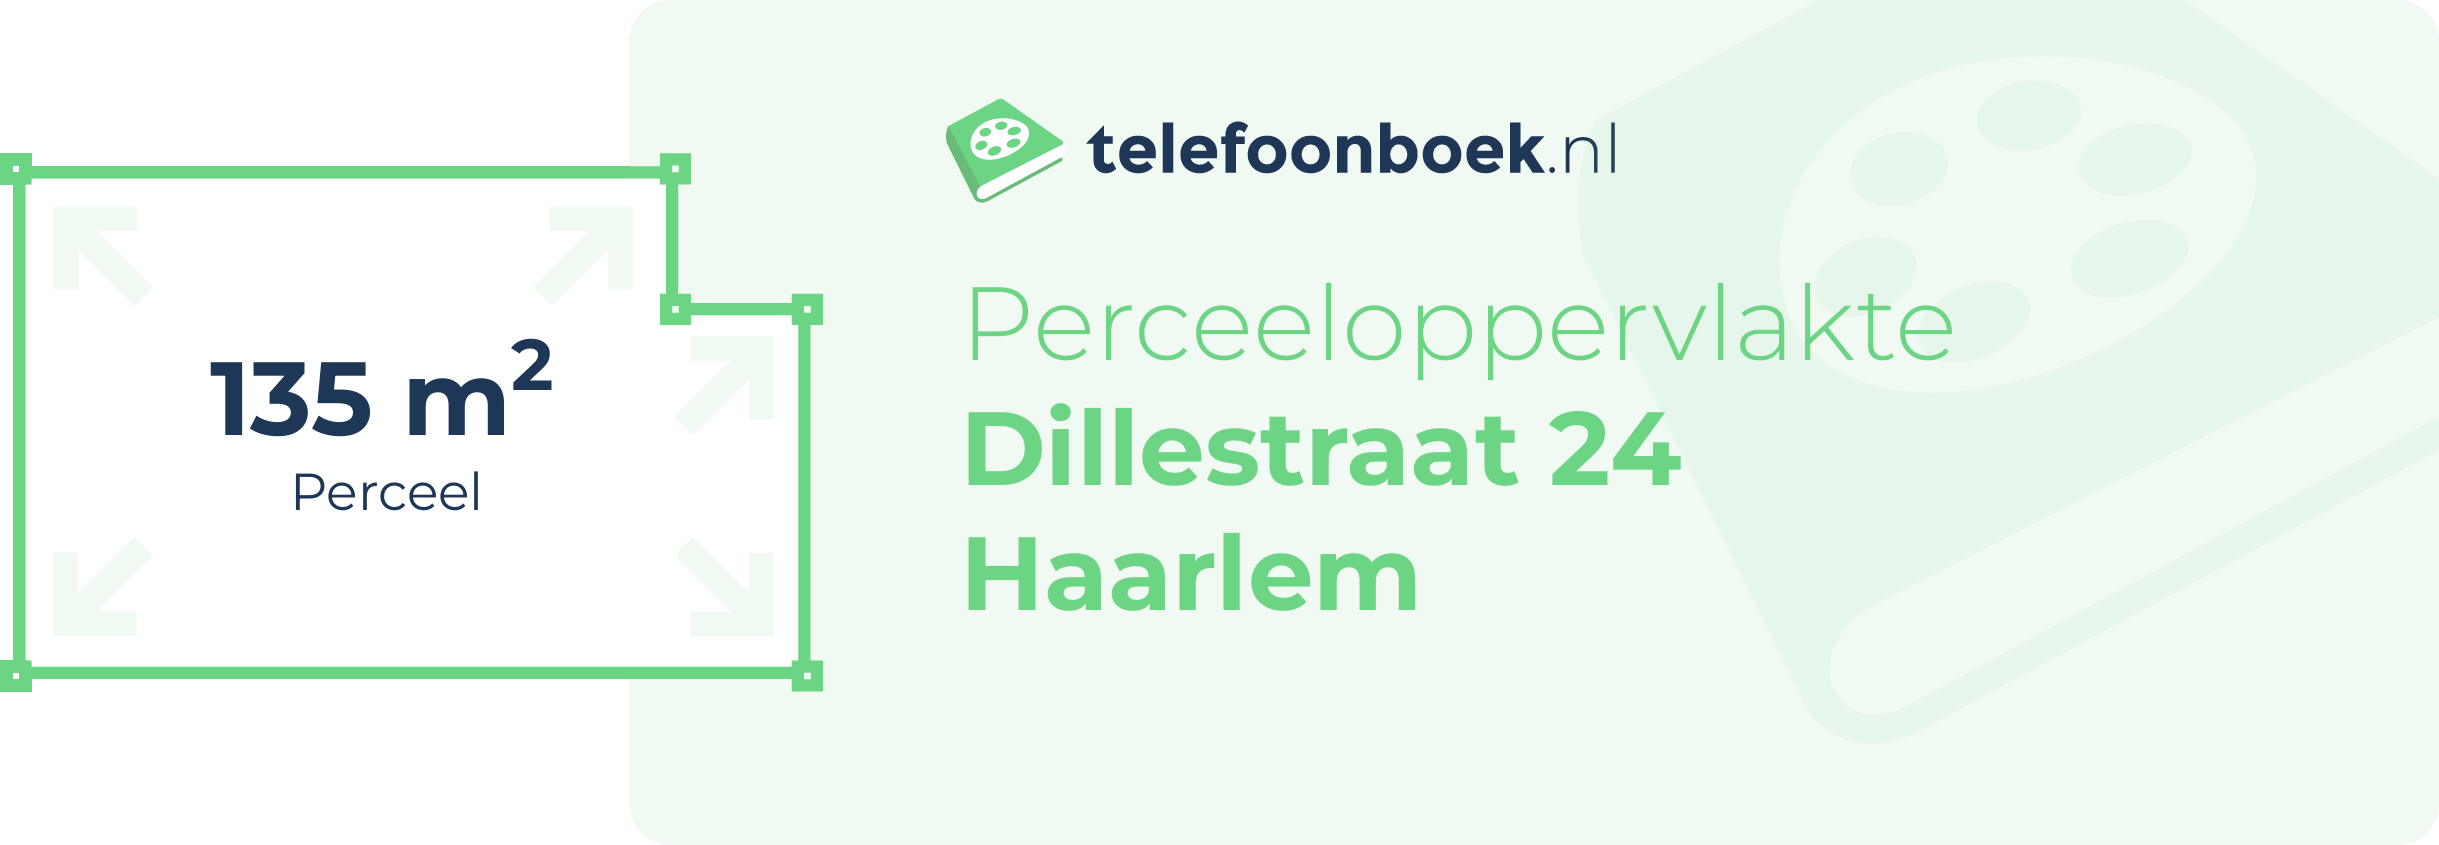 Perceeloppervlakte Dillestraat 24 Haarlem